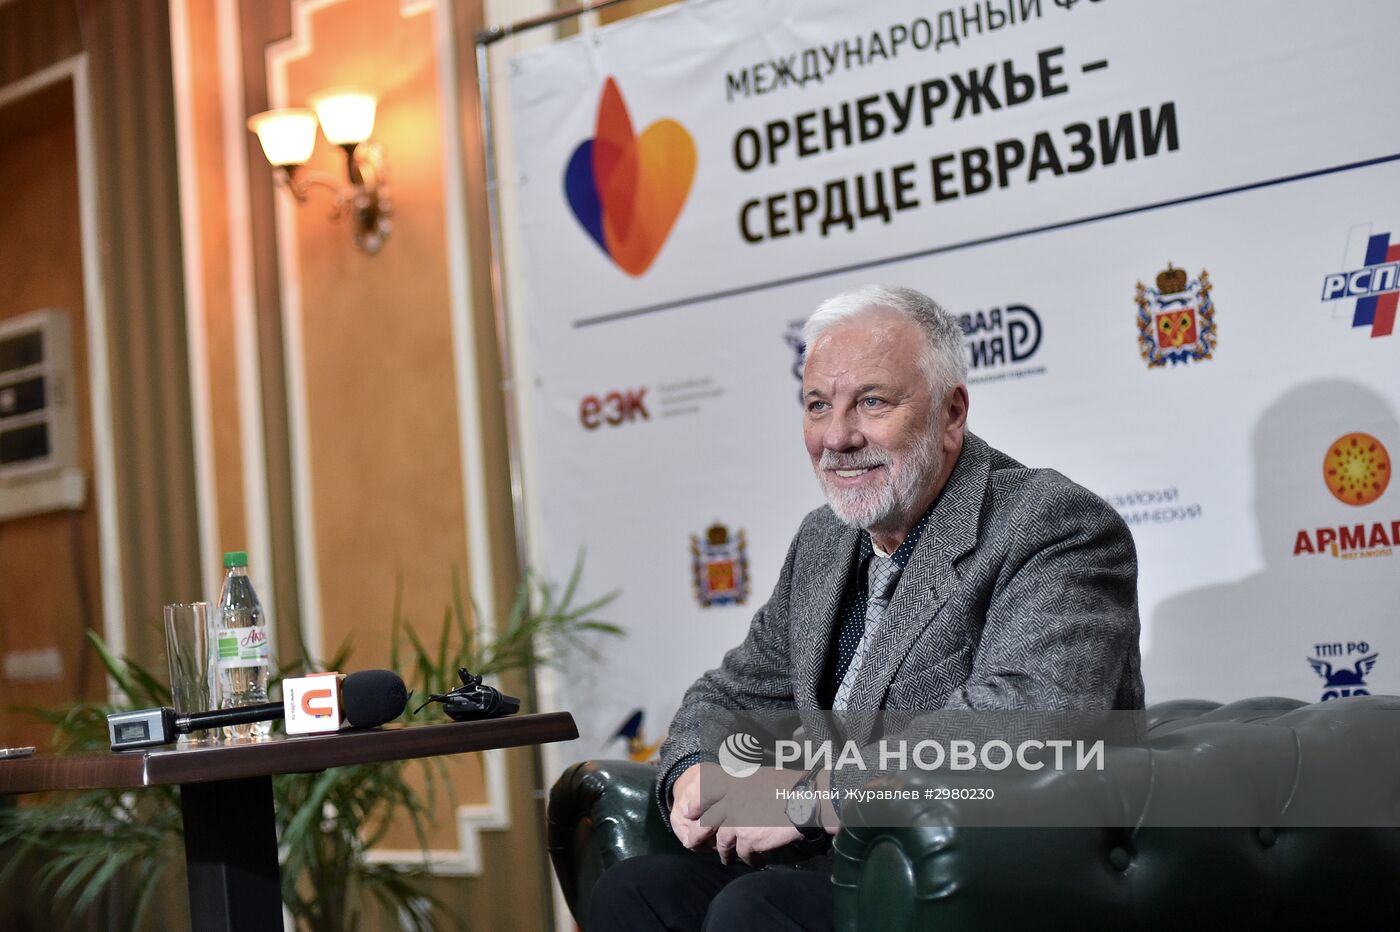 Международный форум "Оренбуржье - сердце Евразии"